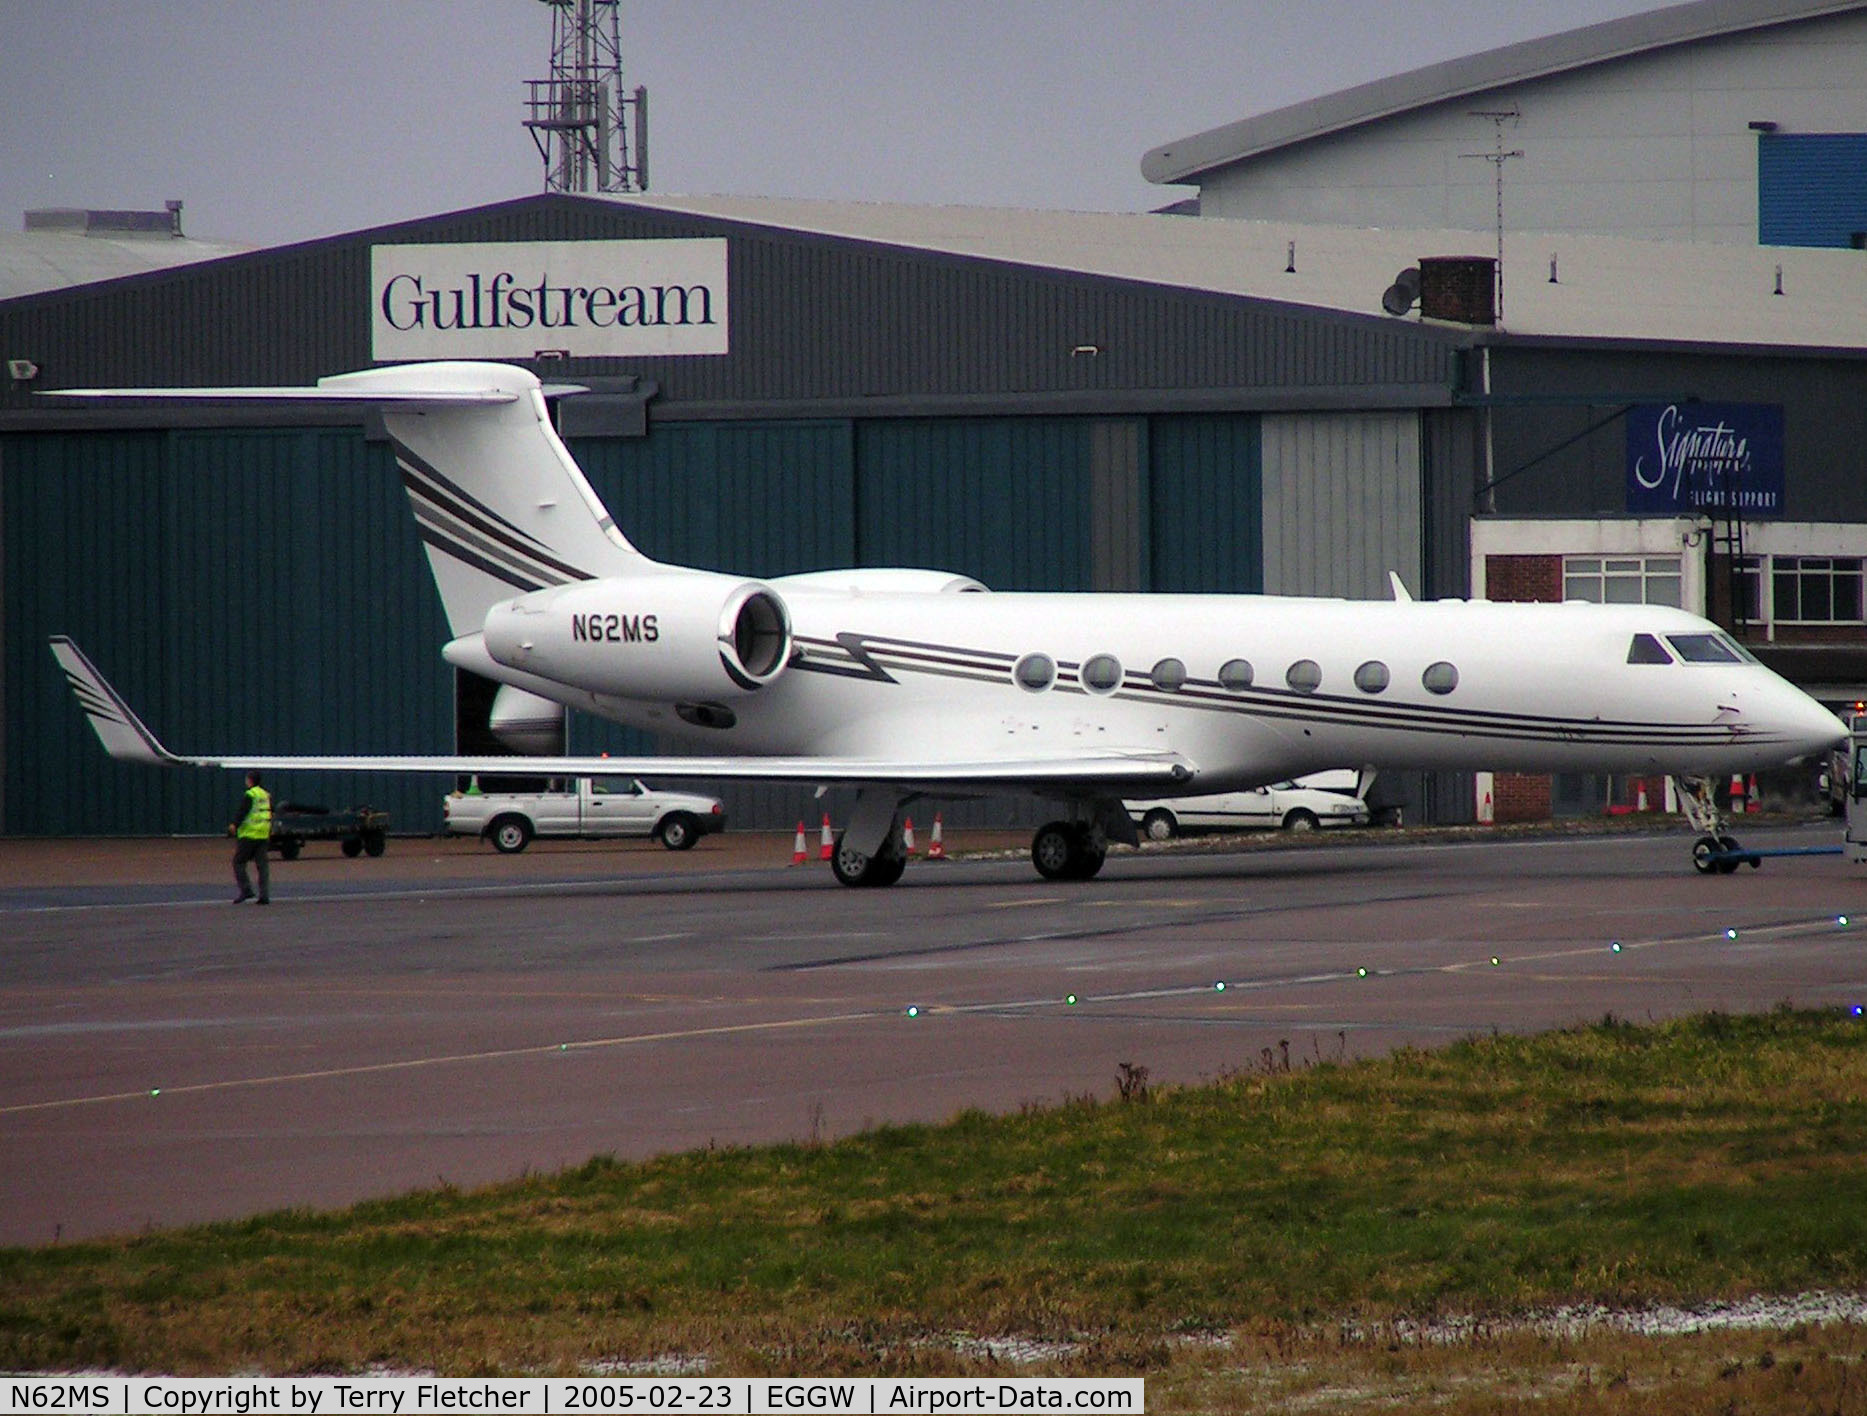 N62MS, 2003 Gulfstream Aerospace GV-SP (G550) C/N 5017, Gulfstream V at Luton in 2005